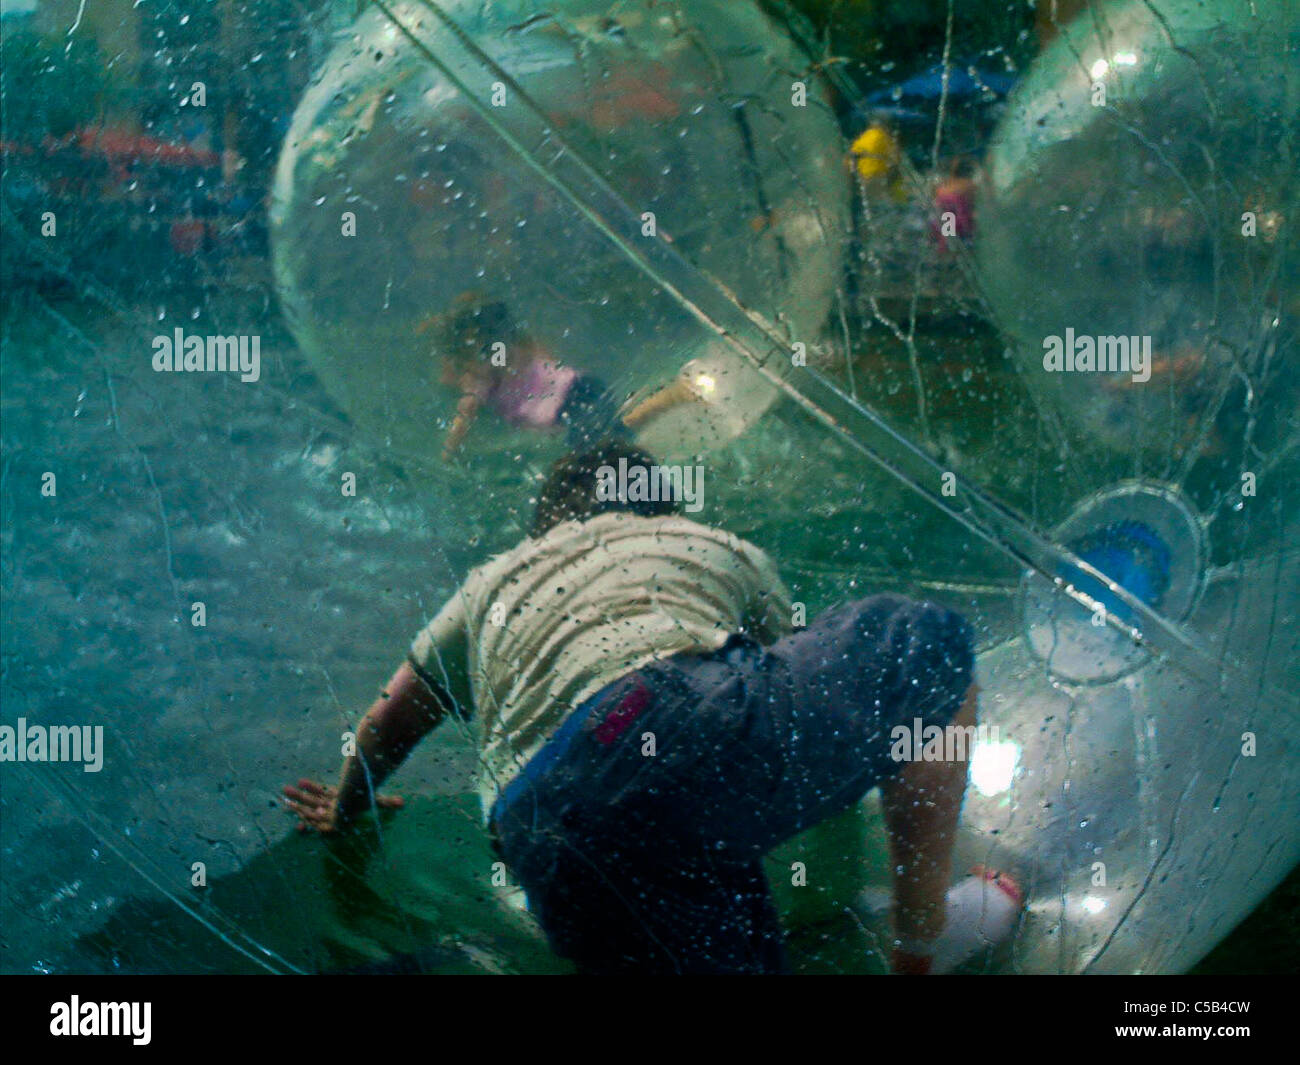 Fat Boy in einer Blase, auf dem Wasser im Vergnügungspark Pool  Stockfotografie - Alamy